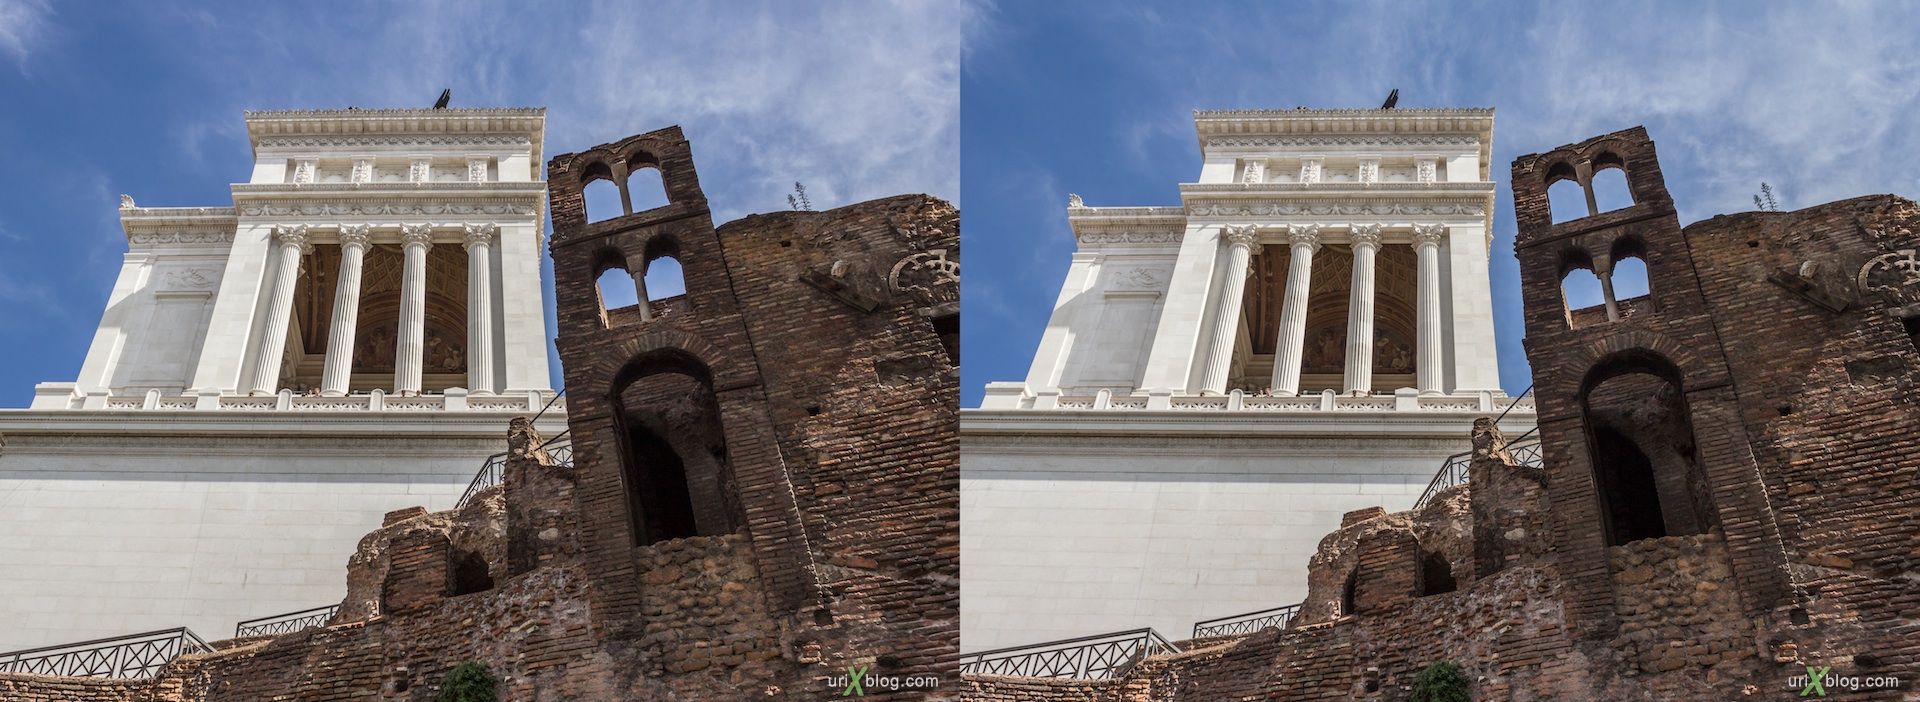 2012, Insula Romana, Monument of Vittorio Emanuele II, Vittoriano, 3D, stereo pair, cross-eyed, crossview, cross view stereo pair